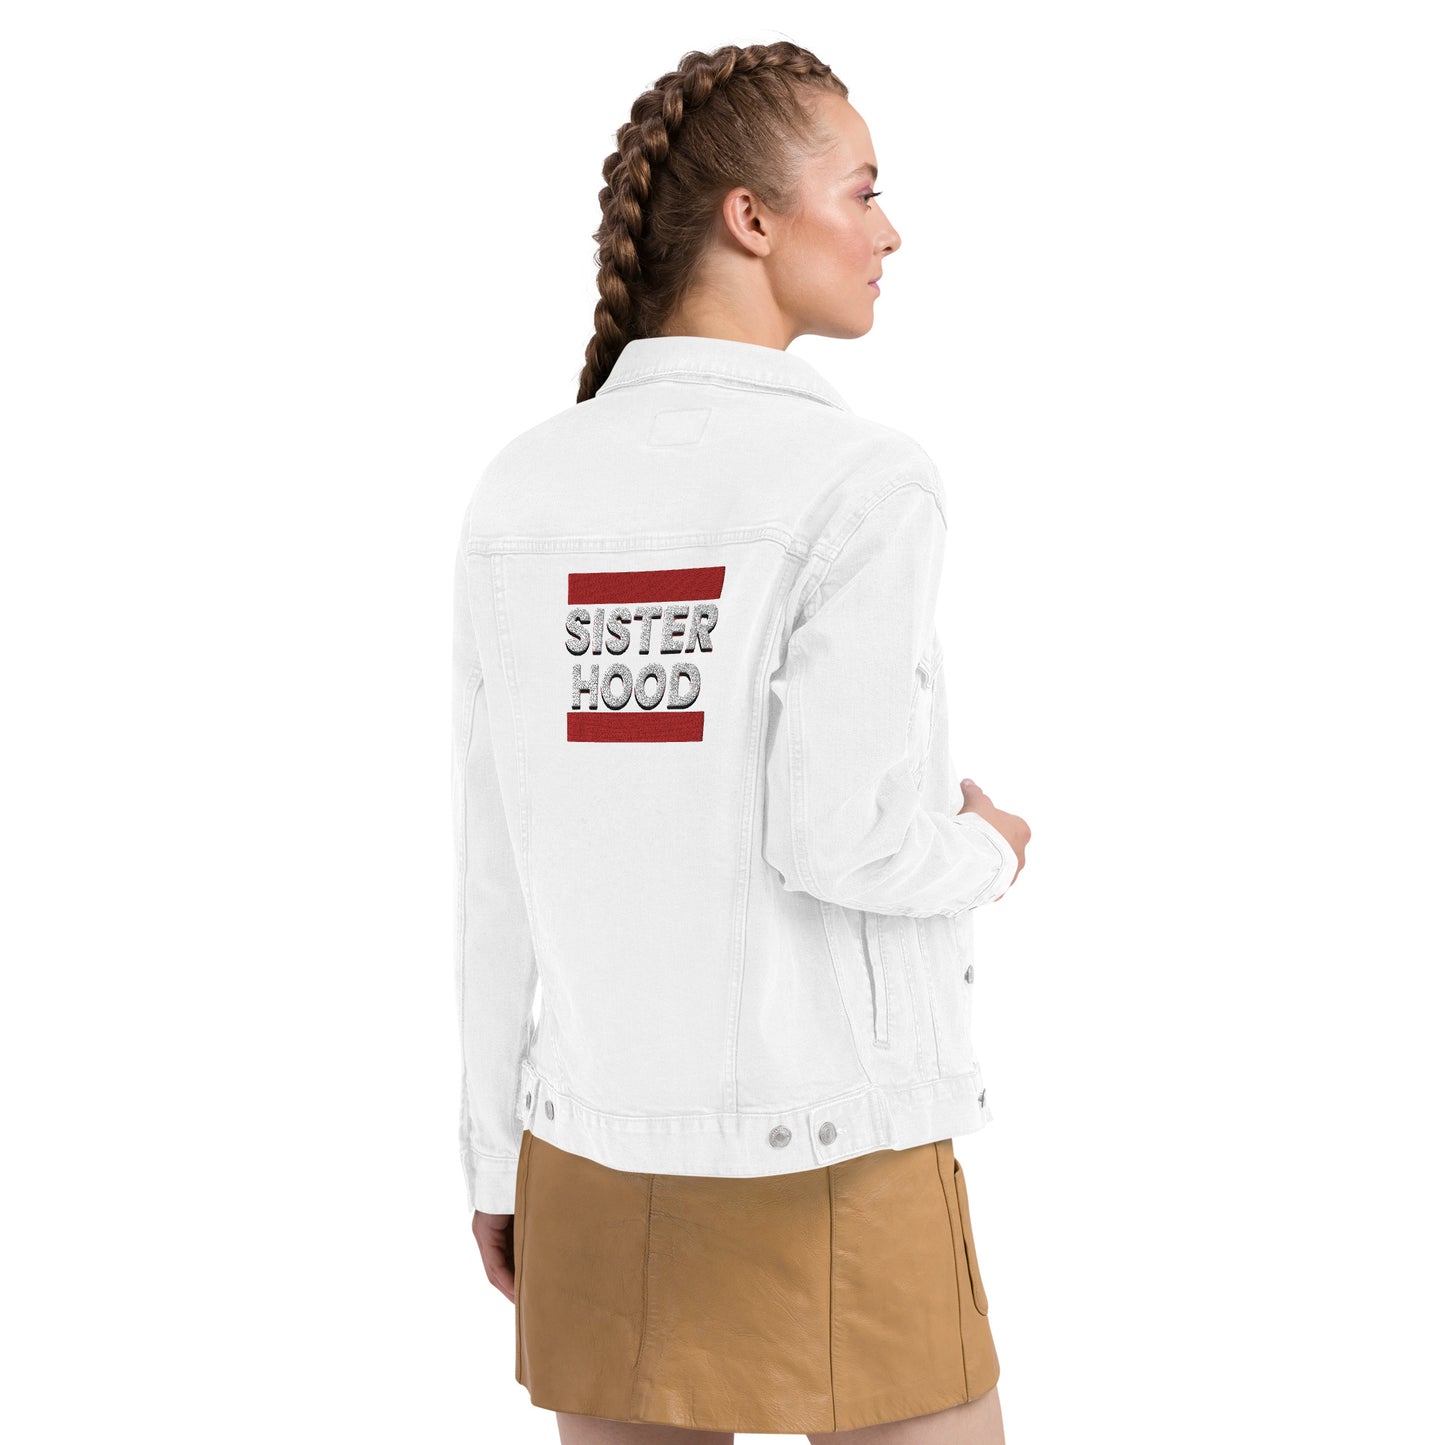 Embroidered Sisterhood denim jacket